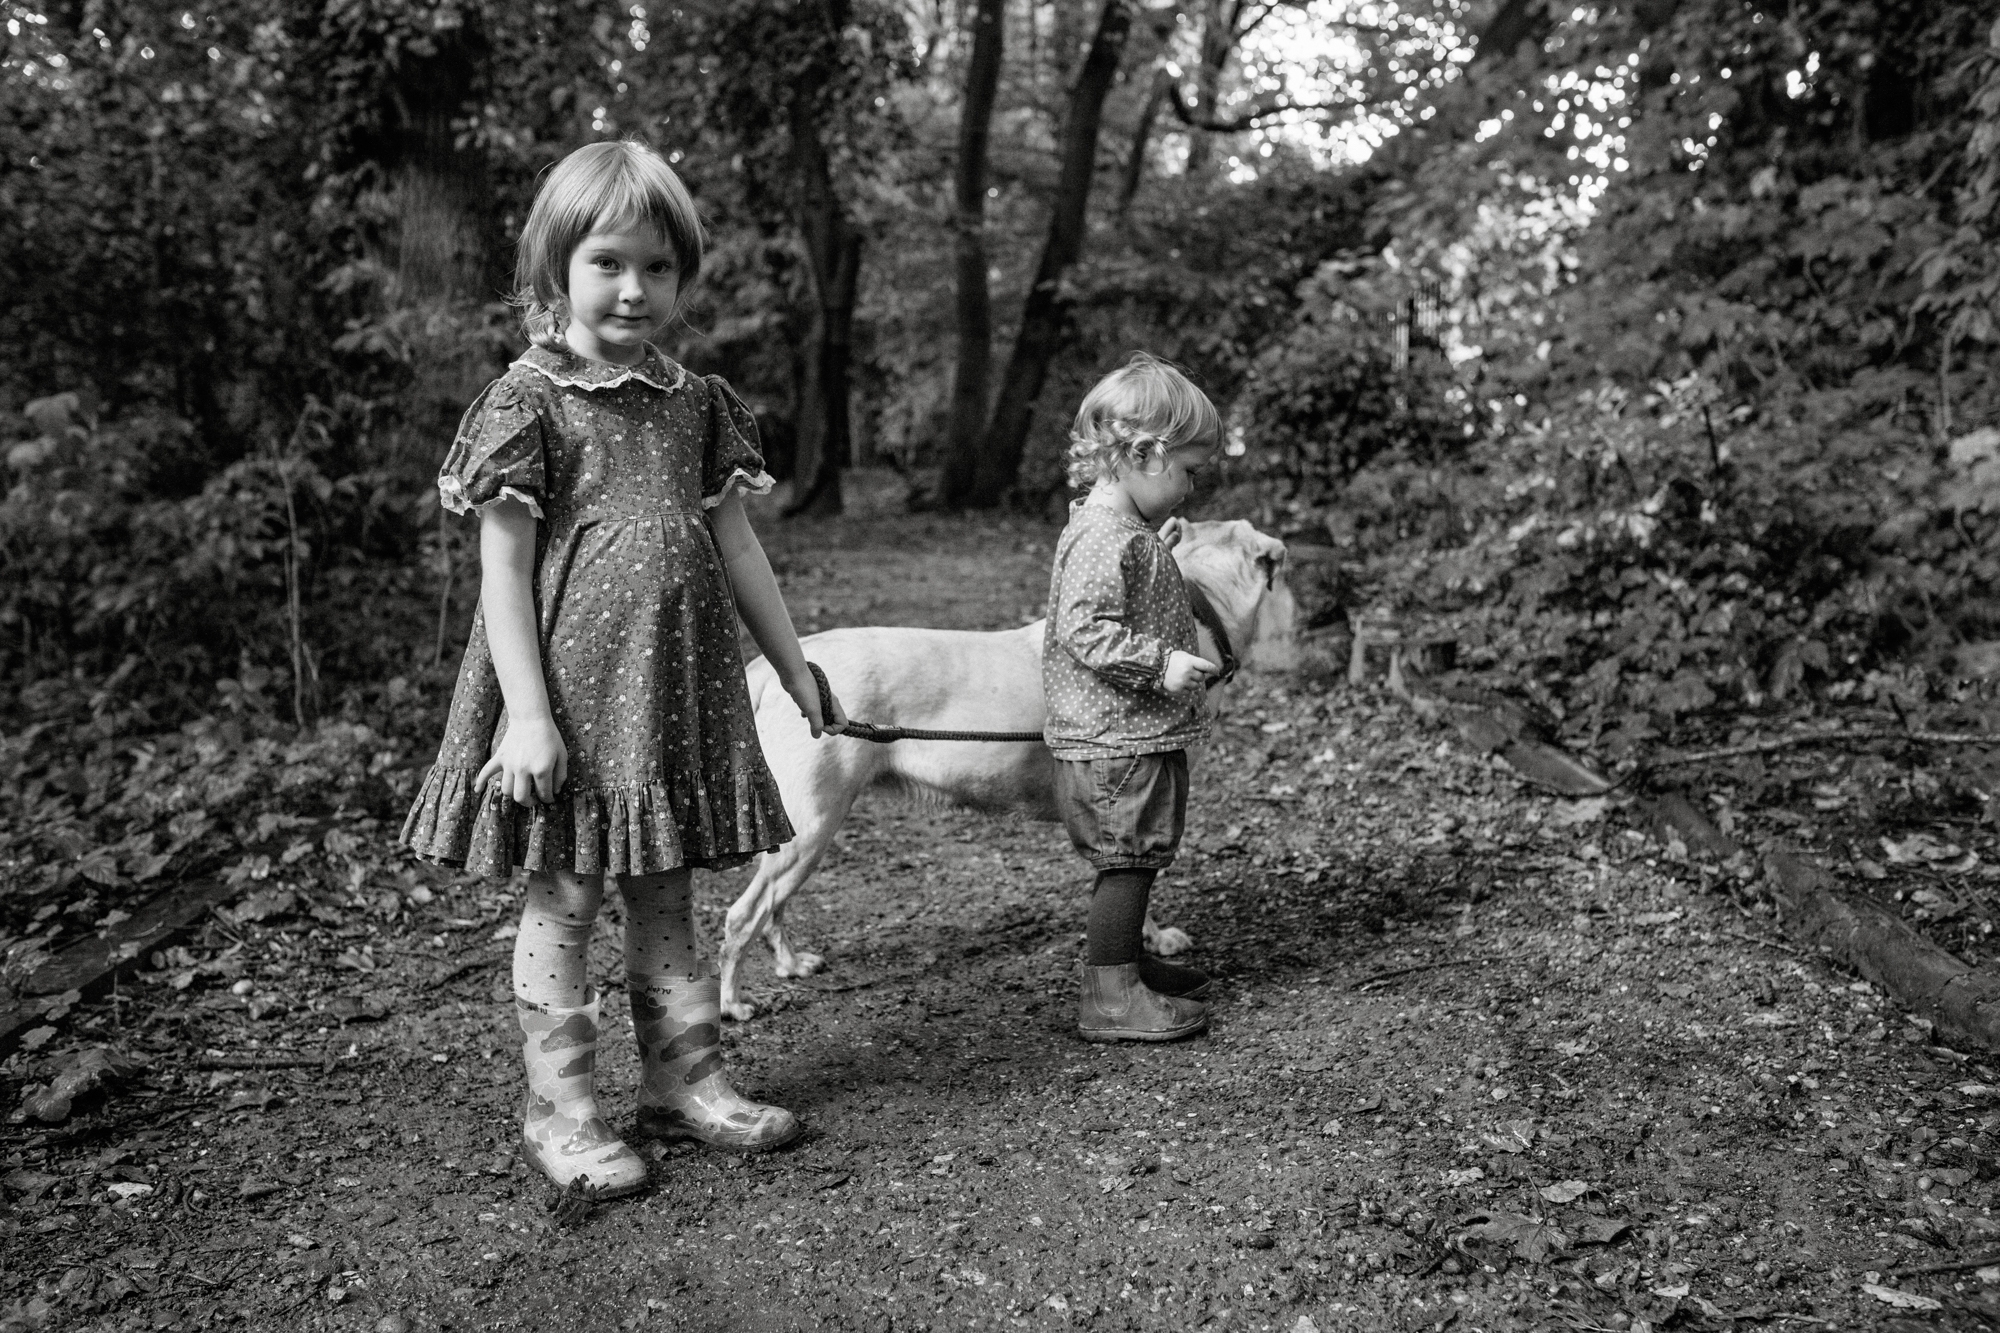 children's portrait photographer London